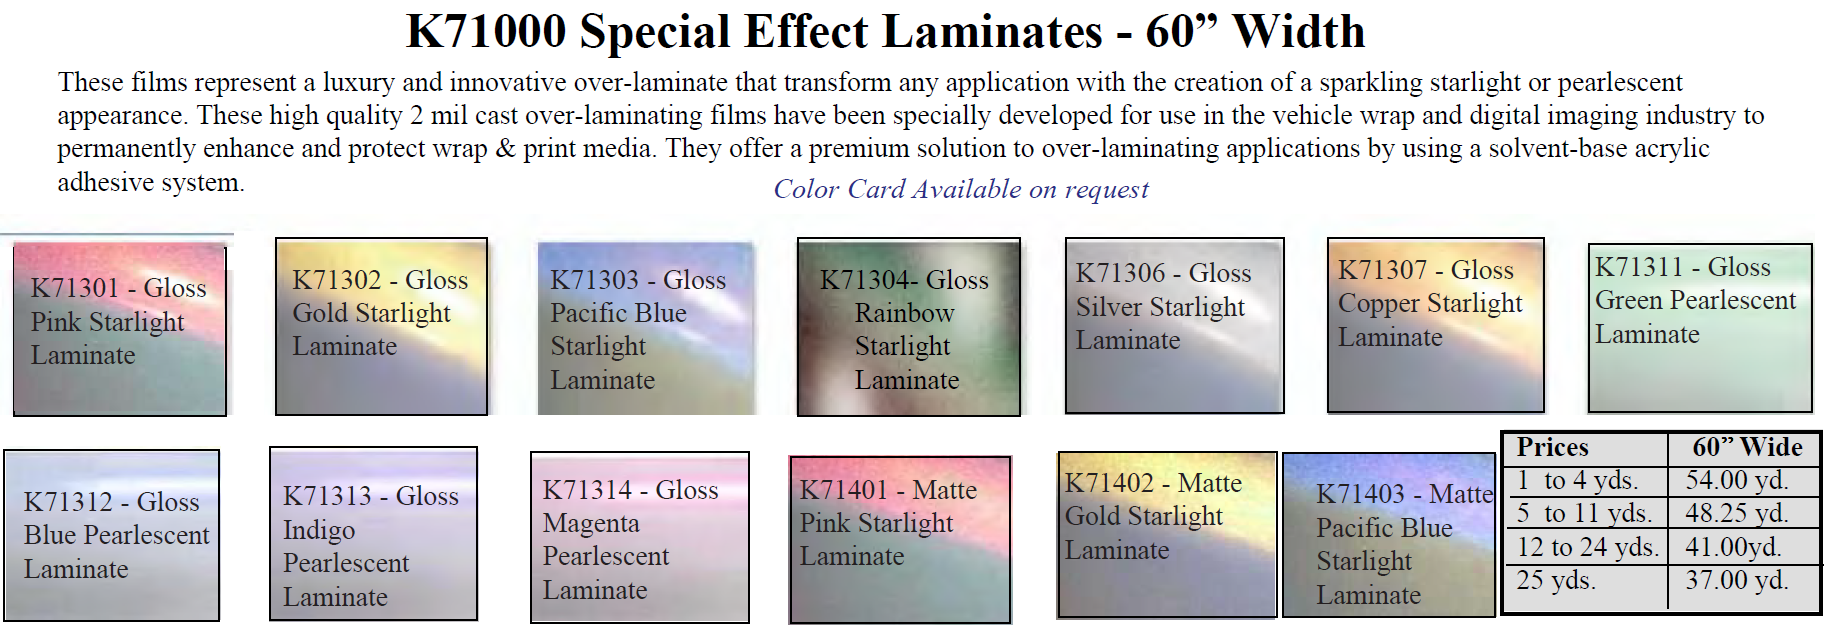 k71000 spec. effect jan 2022 - K71000 Special Effect Laminates - 60" Width